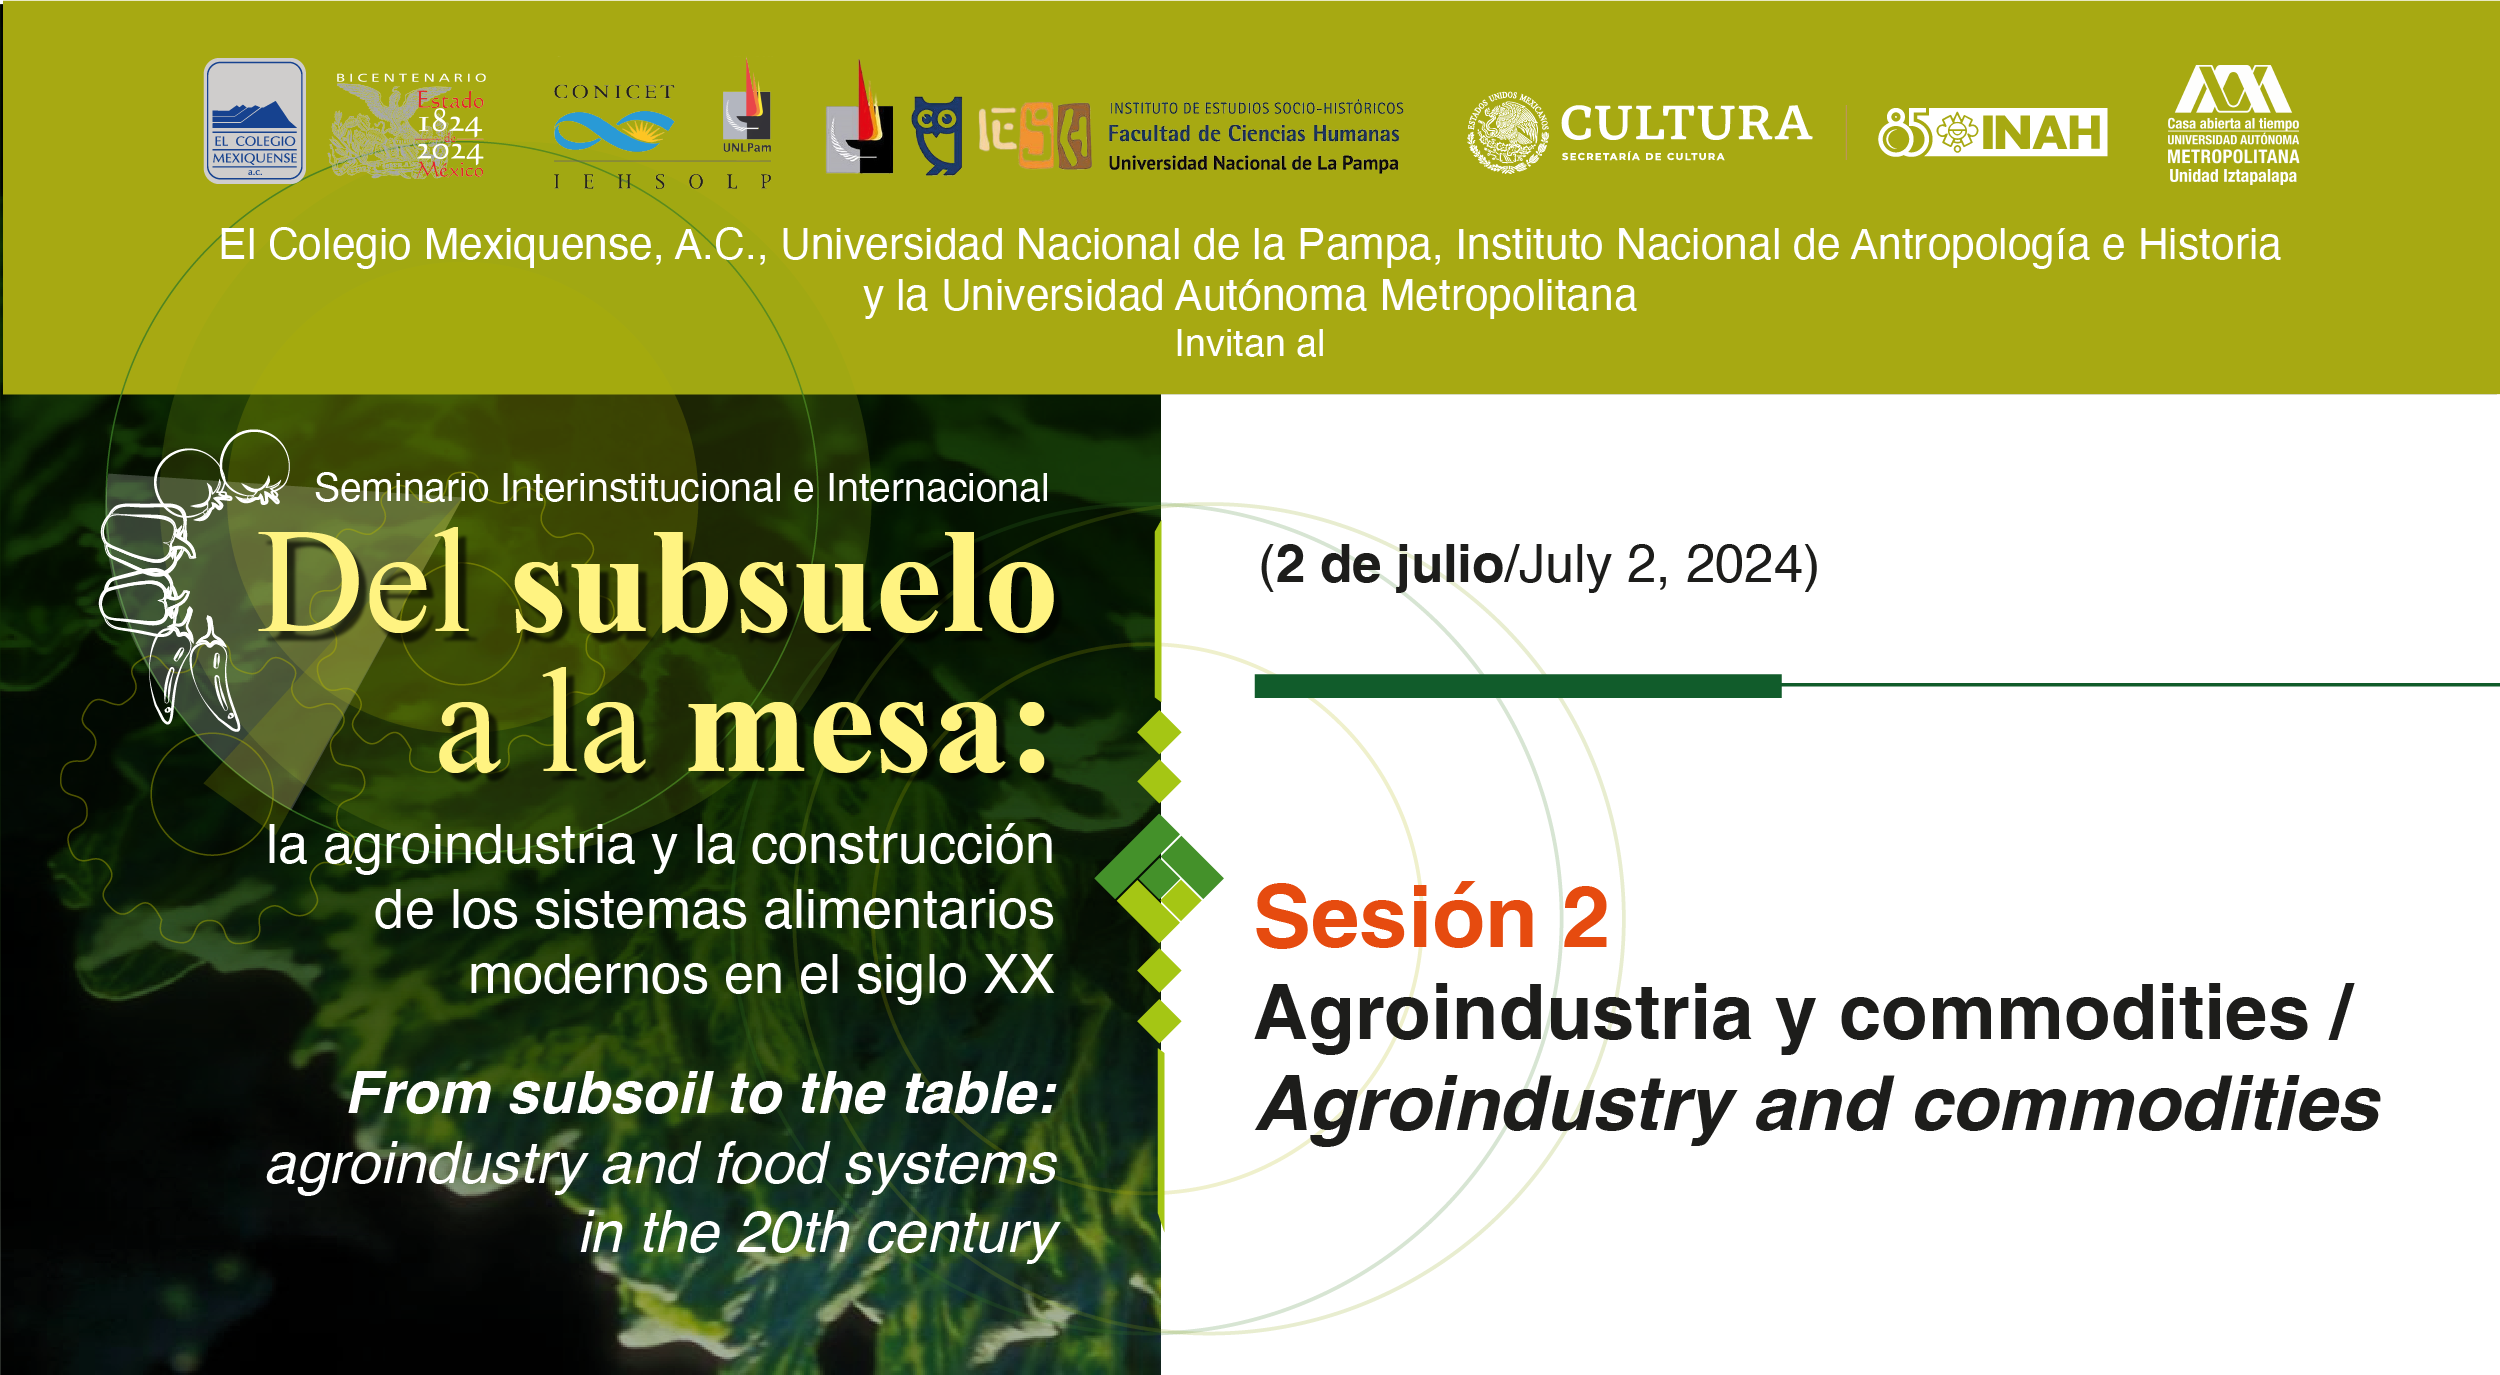 Seminario Interinstitucional e Internacional. Del subsuelo a la mesa: la agroindustria y la construcción de sistemas alimentarios modernos en el siglo XX. Sesión 2